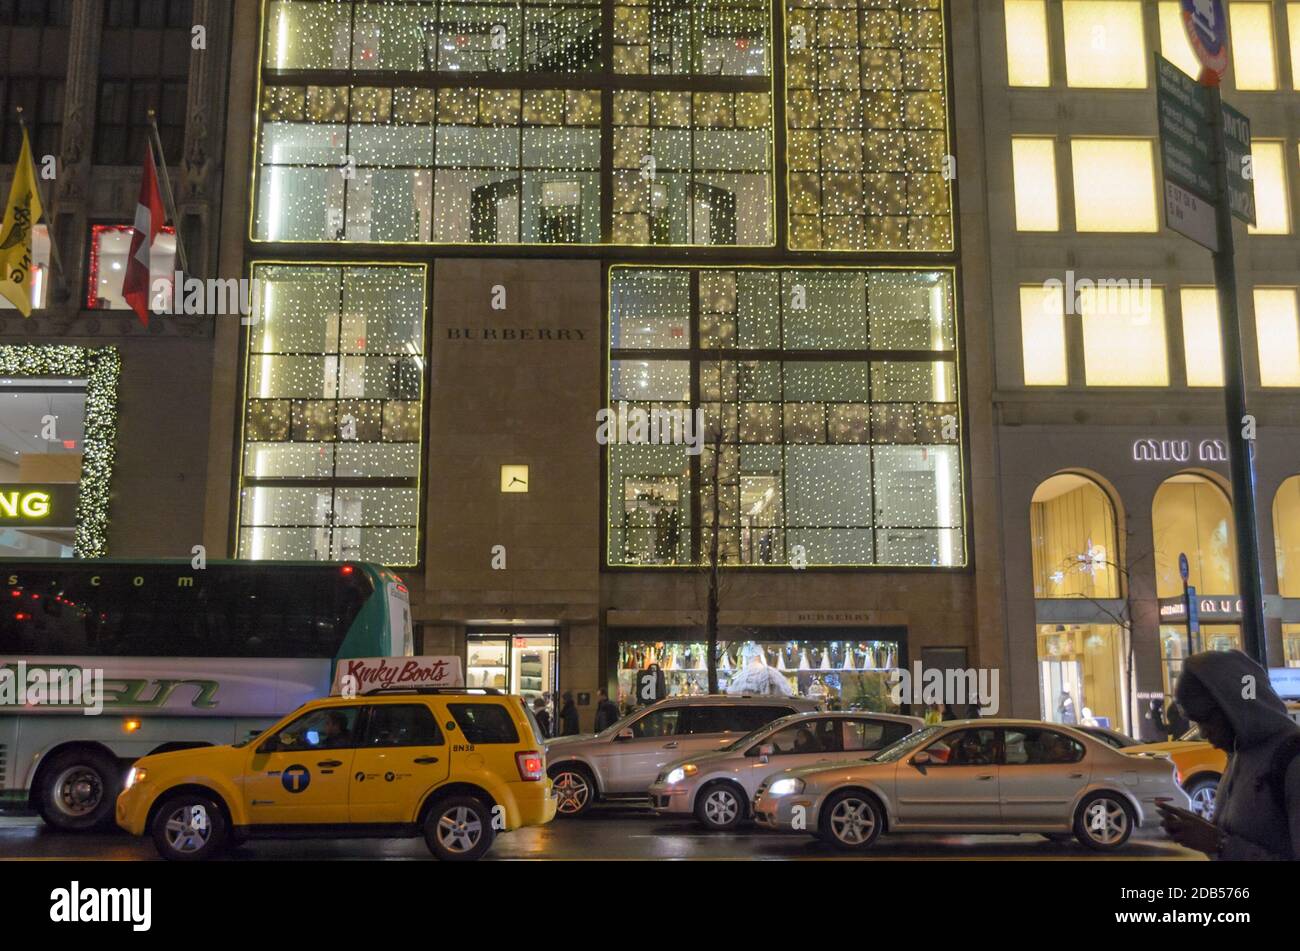 L'avenue animée de Manhattan et le Burberry Store sont habillés de décorations de Noël avec des lumières vives sur la façade. New York, États-Unis Banque D'Images